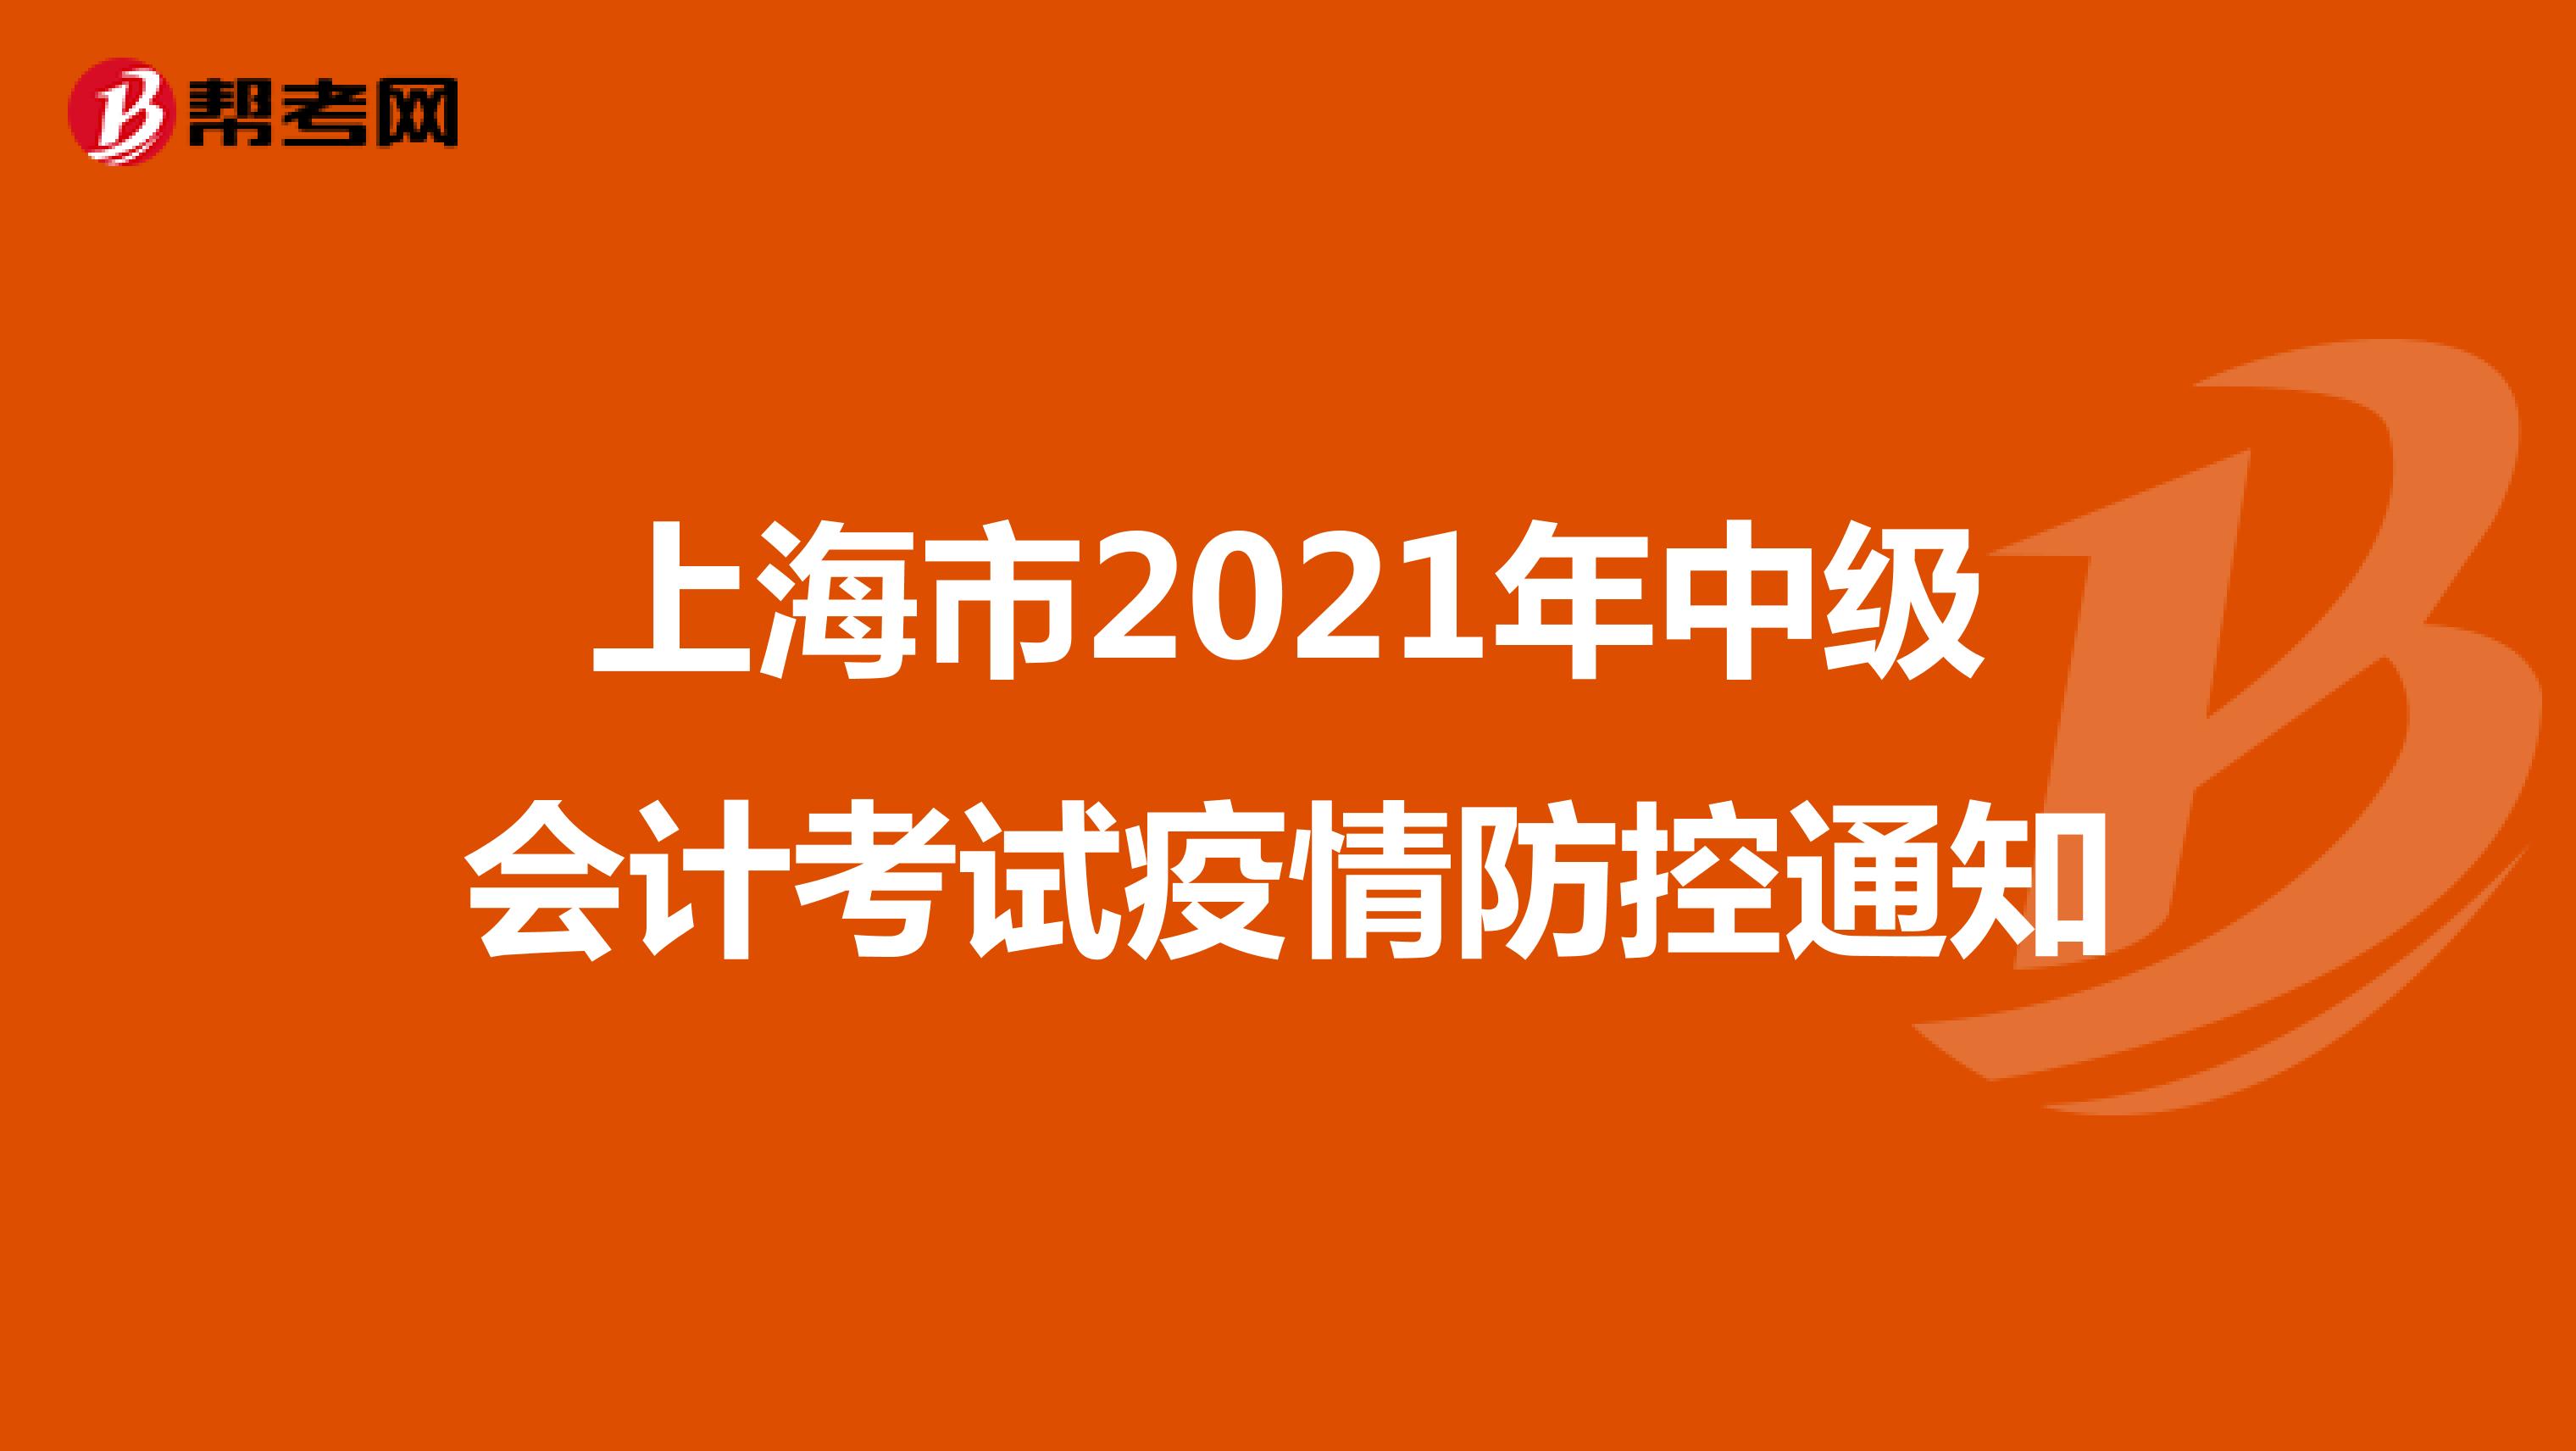 上海市2021年中级会计考试疫情防控通知